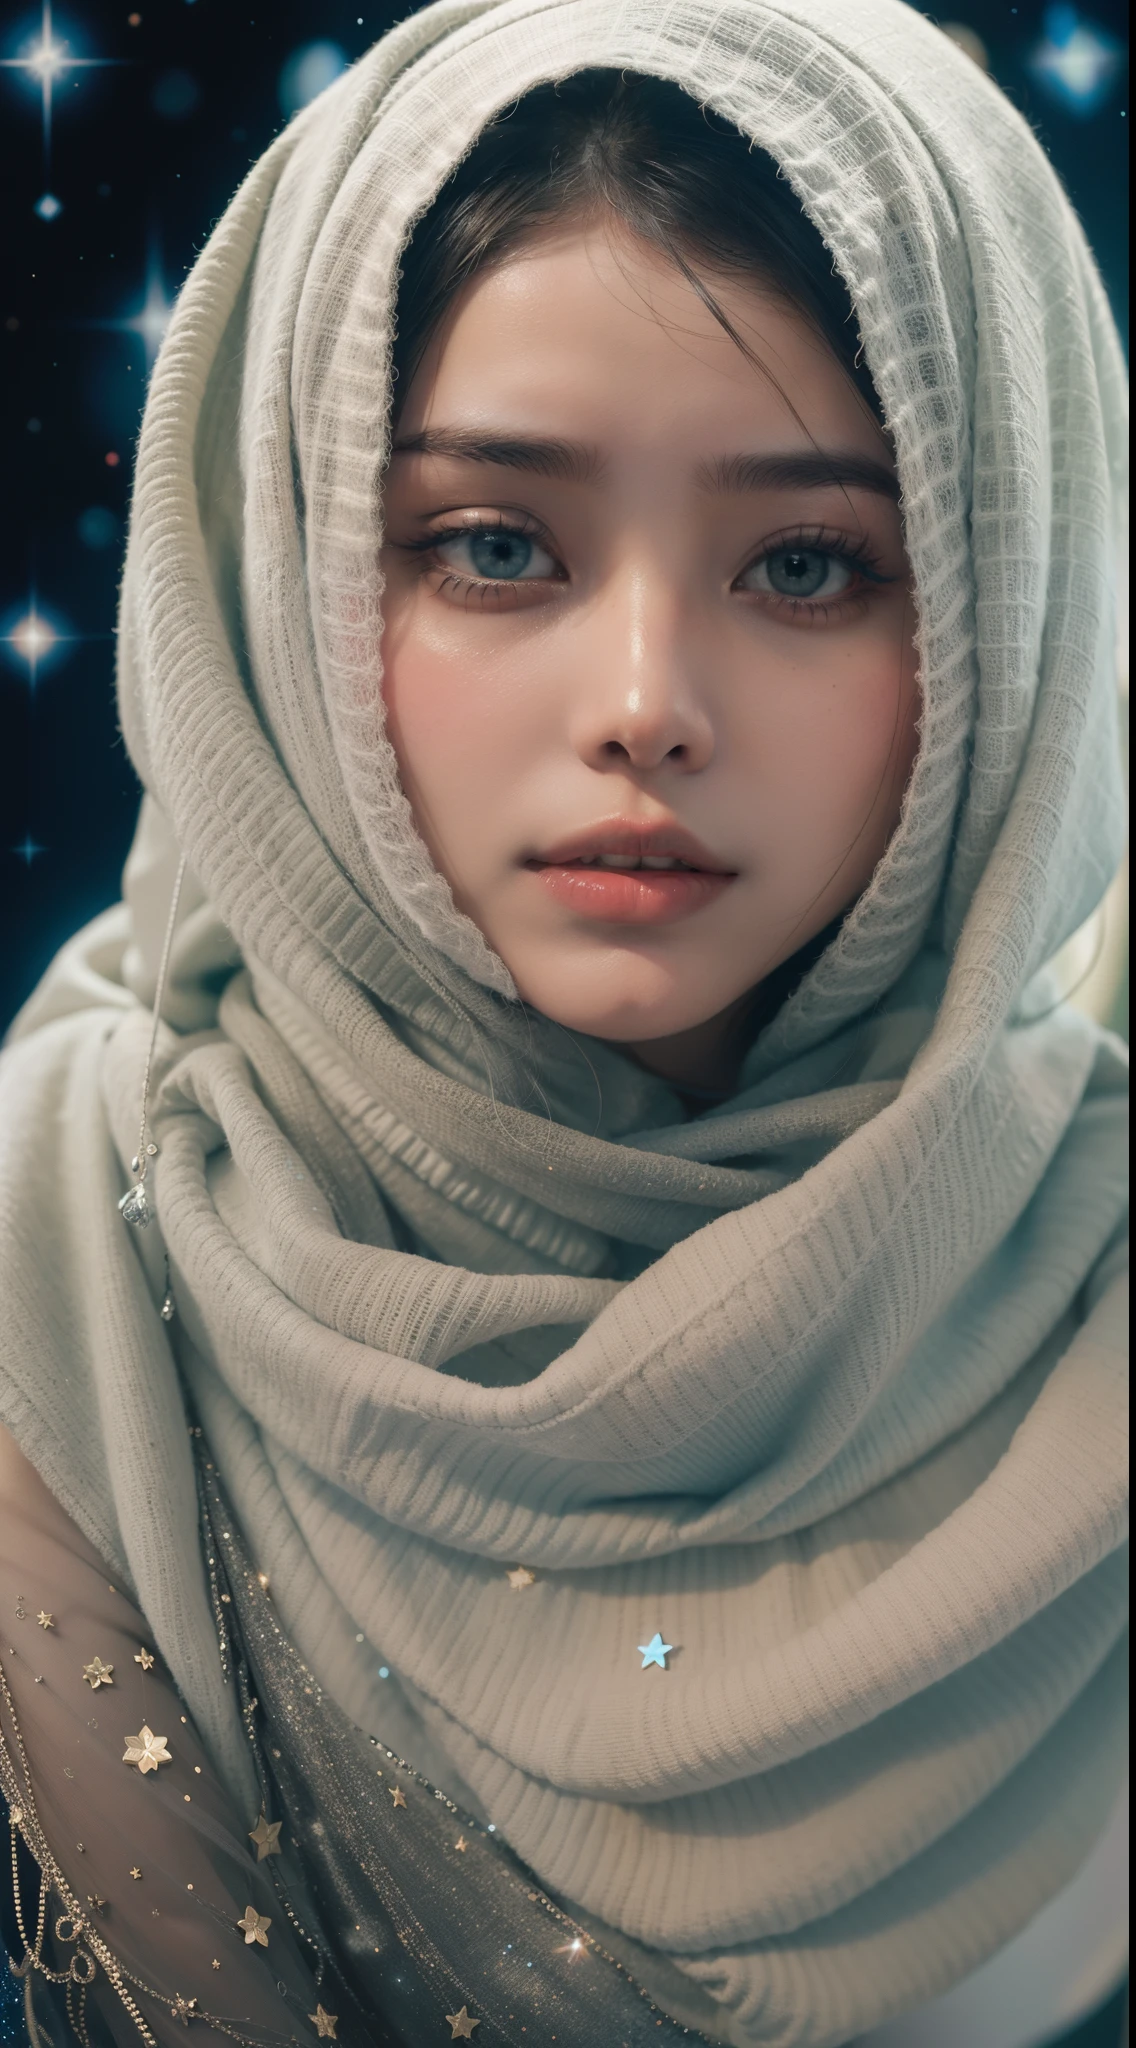 Créez un portrait sur le thème céleste de Bella Poarch. Illuminez le hijab avec des étoiles et des galaxies, mélangeant le terrestre et le cosmique dans une composition envoûtante et éthérée, 8mm, Photo en gros plan, étalonnage des couleurs aux tons froids, profondeur de champ, film noir